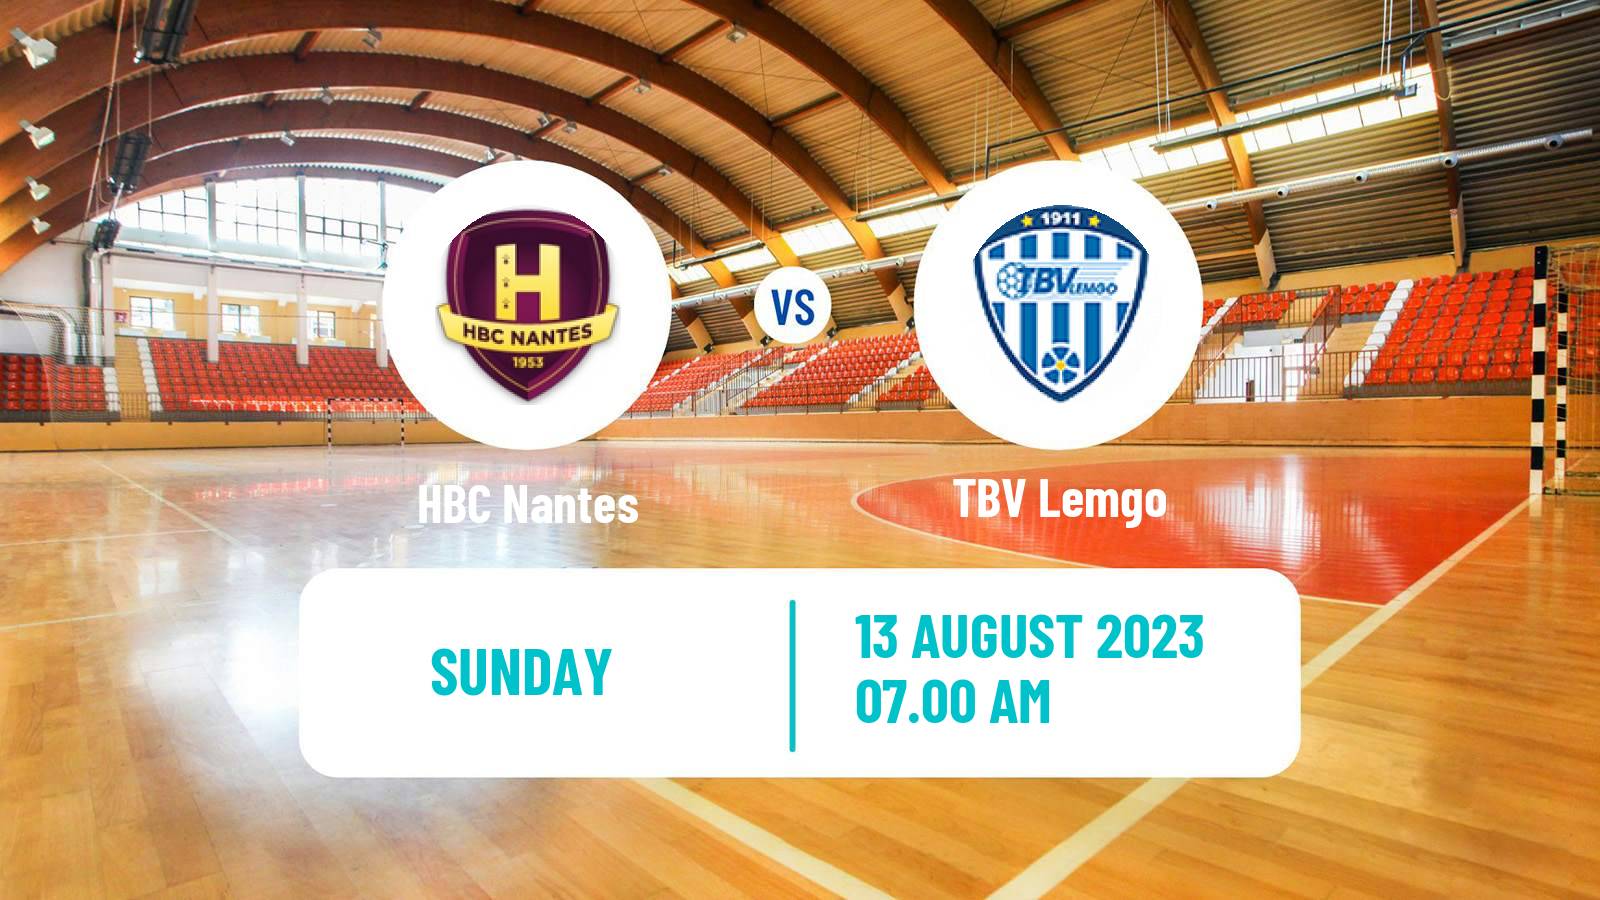 Handball Club Friendly Hanbdall HBC Nantes - TBV Lemgo